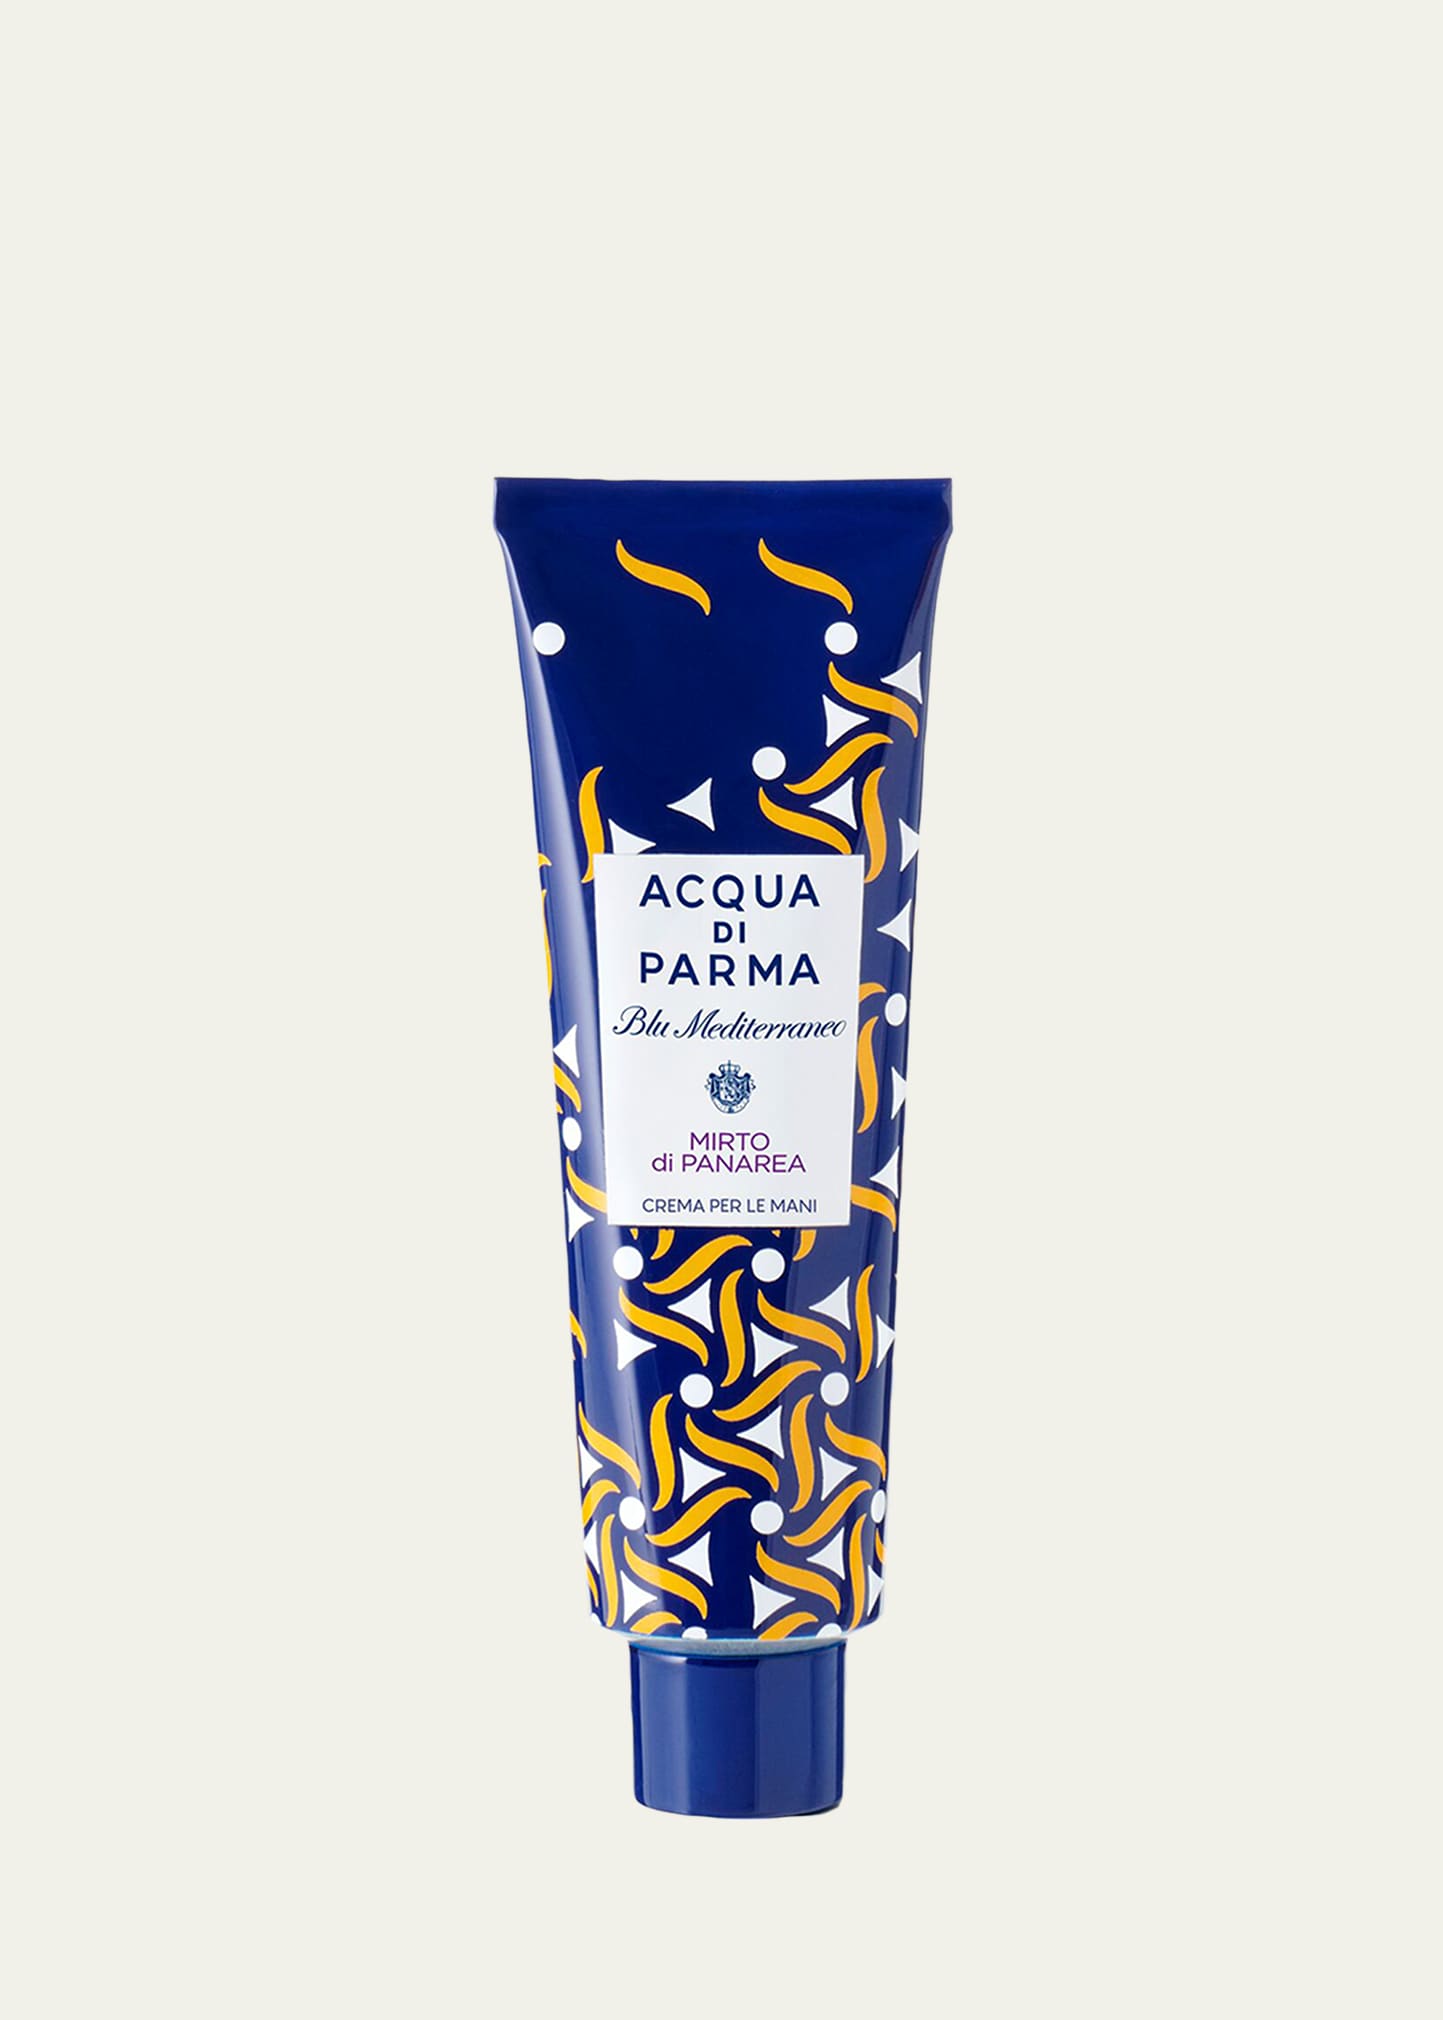 Mirto di Panarea Limited Edition Hand Cream, 1 oz.